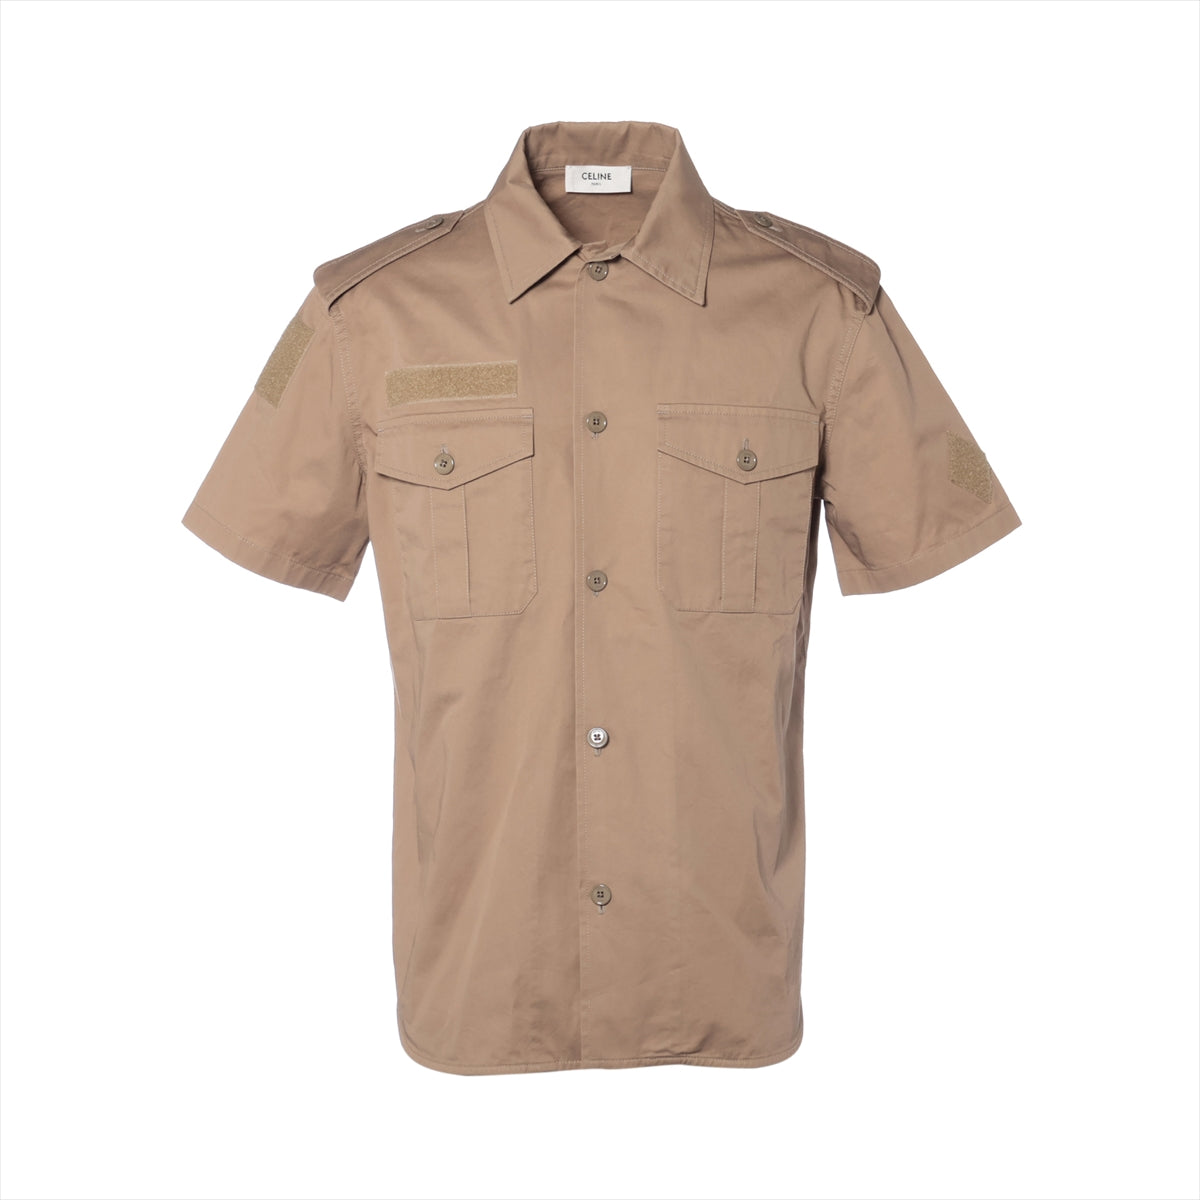 Celine Cotton & linen Shirt 38 Men's Khaki  velcro detail short sleeve open collar shirt 2C881219I